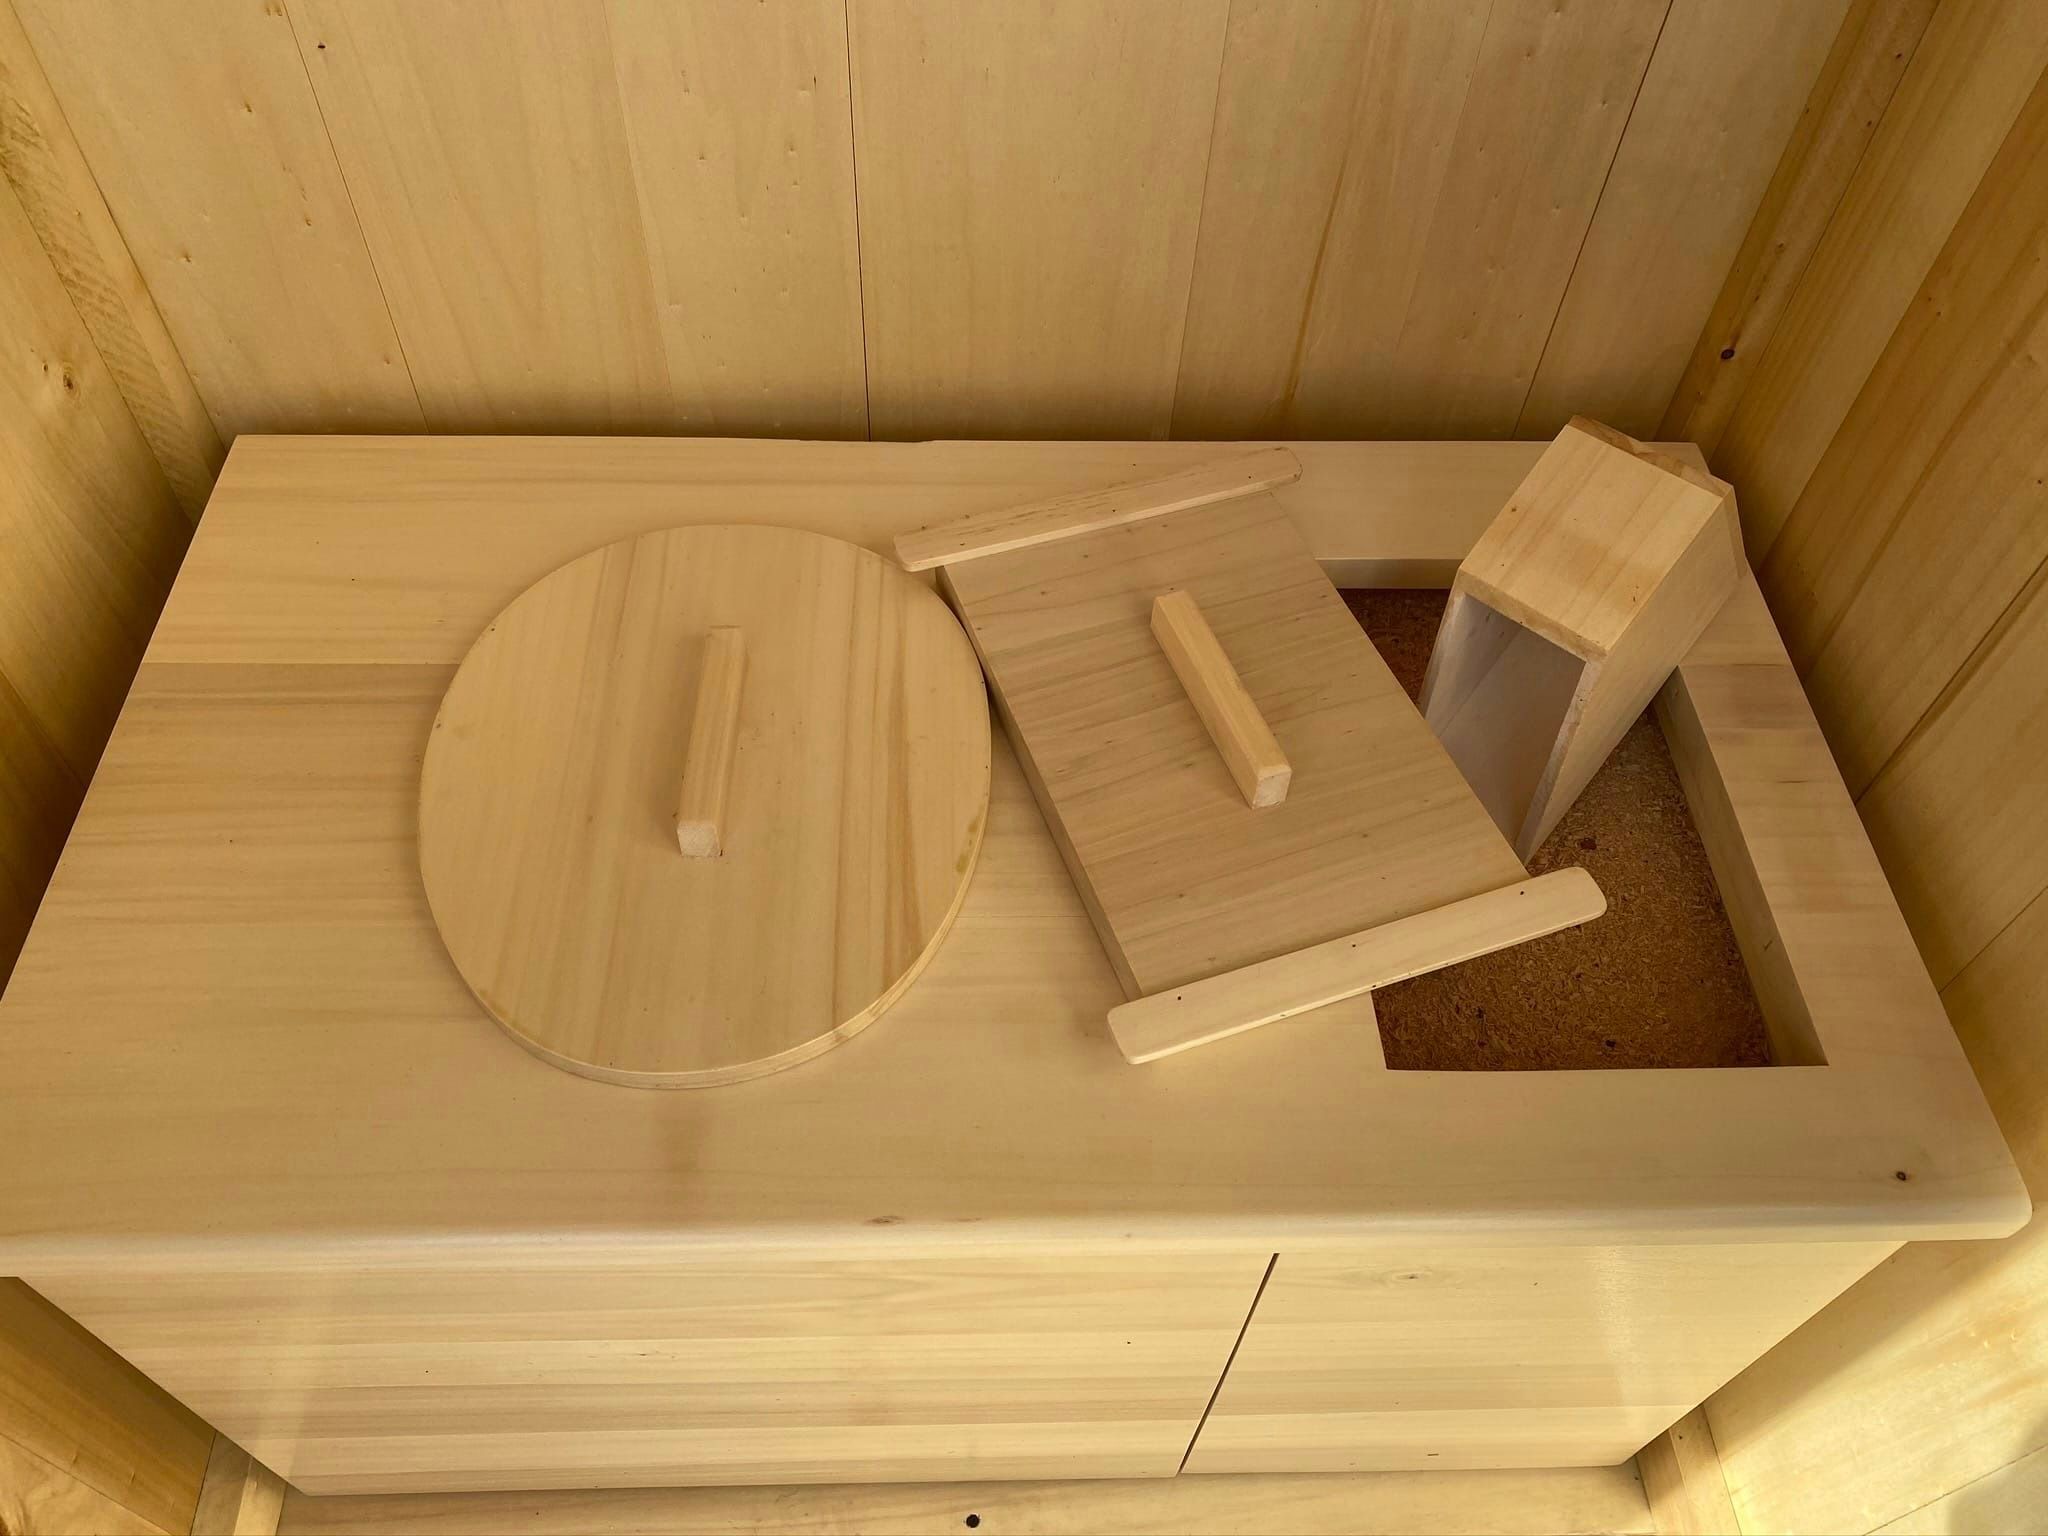 Toilette sèche en bois massif avec compartiment copeaux à l